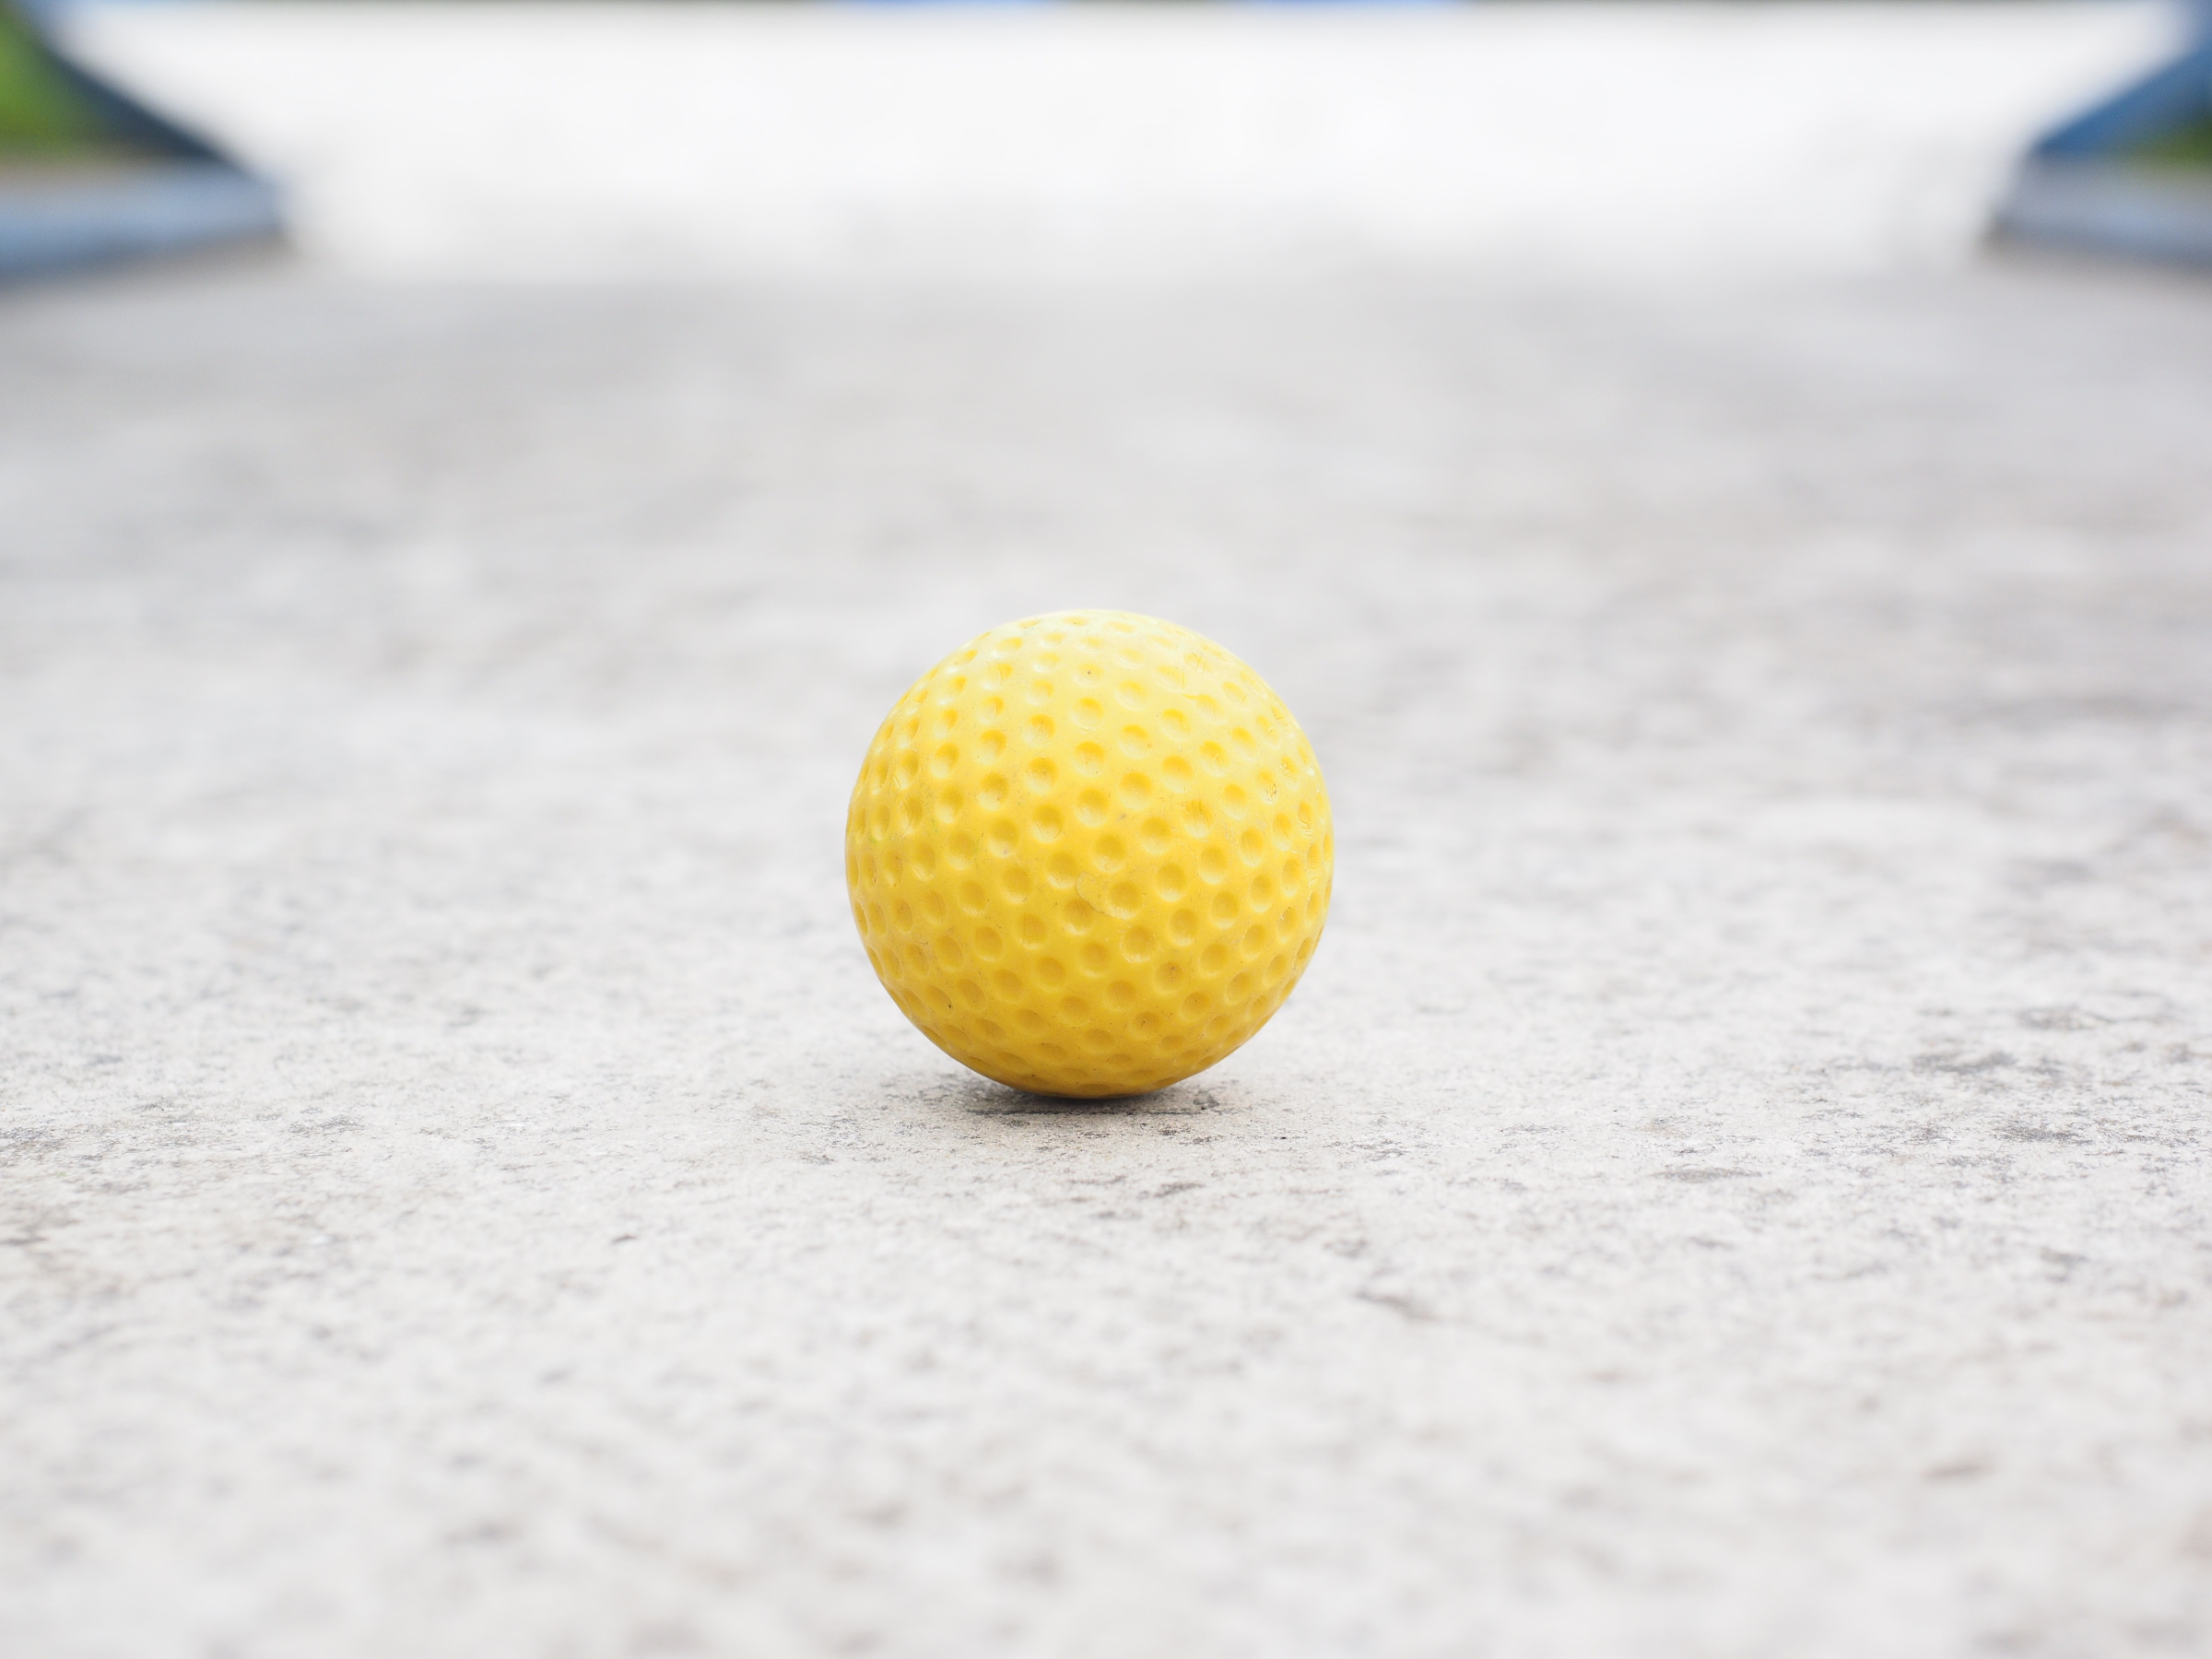 A yellow golf ball on a minigolf lane